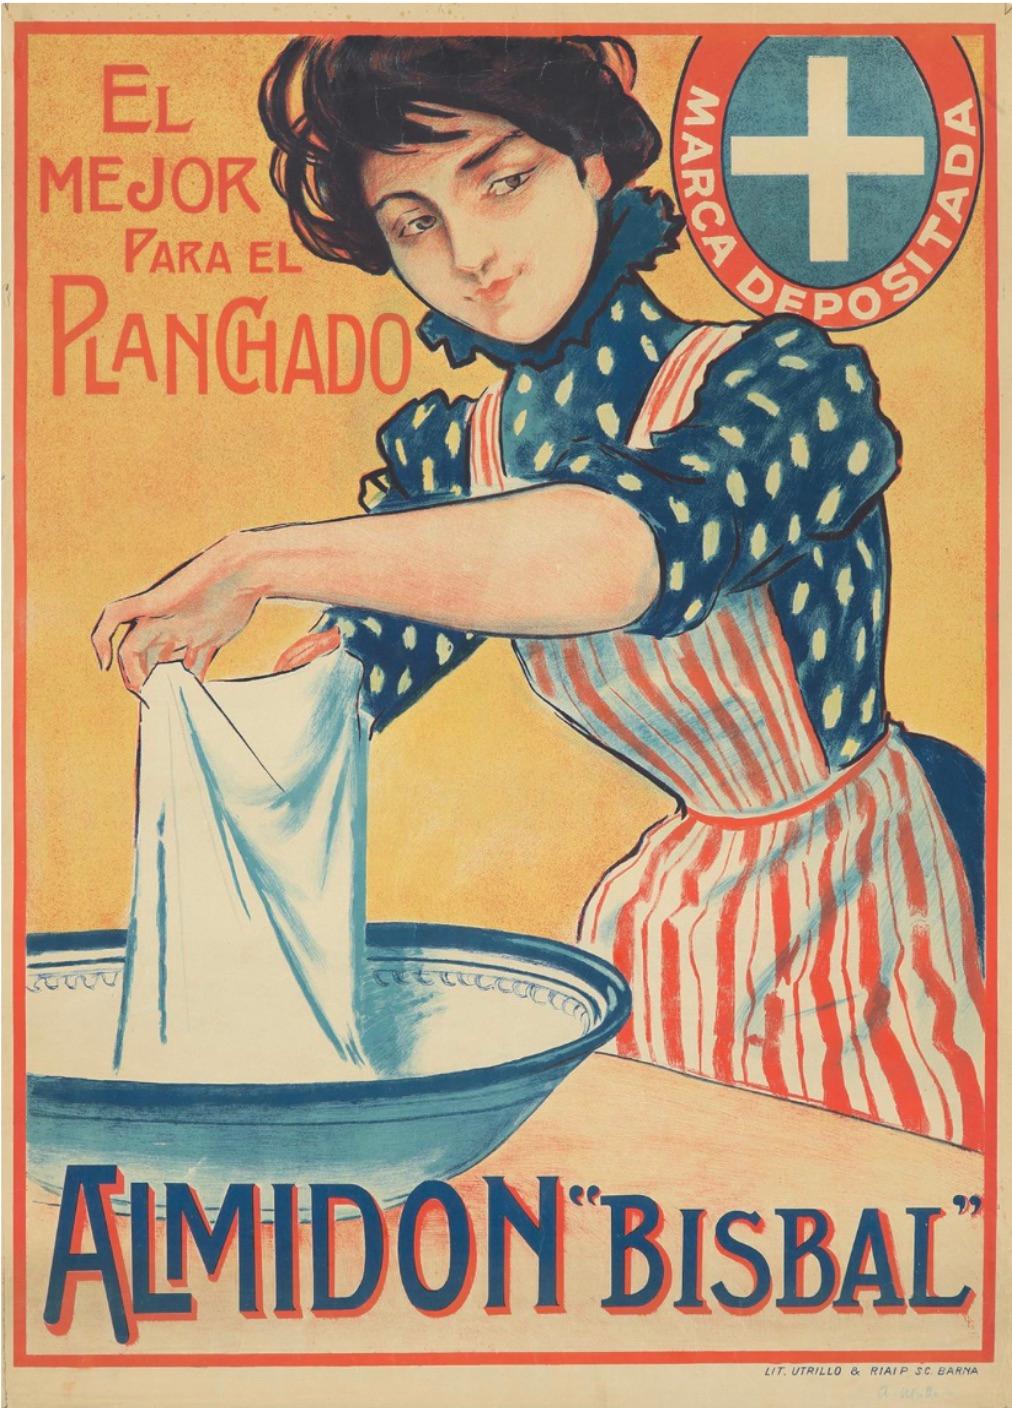 Künstler: Antoni Utrillo  (Spanisch 1867-1944)

Ursprungsdatum: 1926

Medium: Original Steinlithographie Vintage Poster

Größe: 24